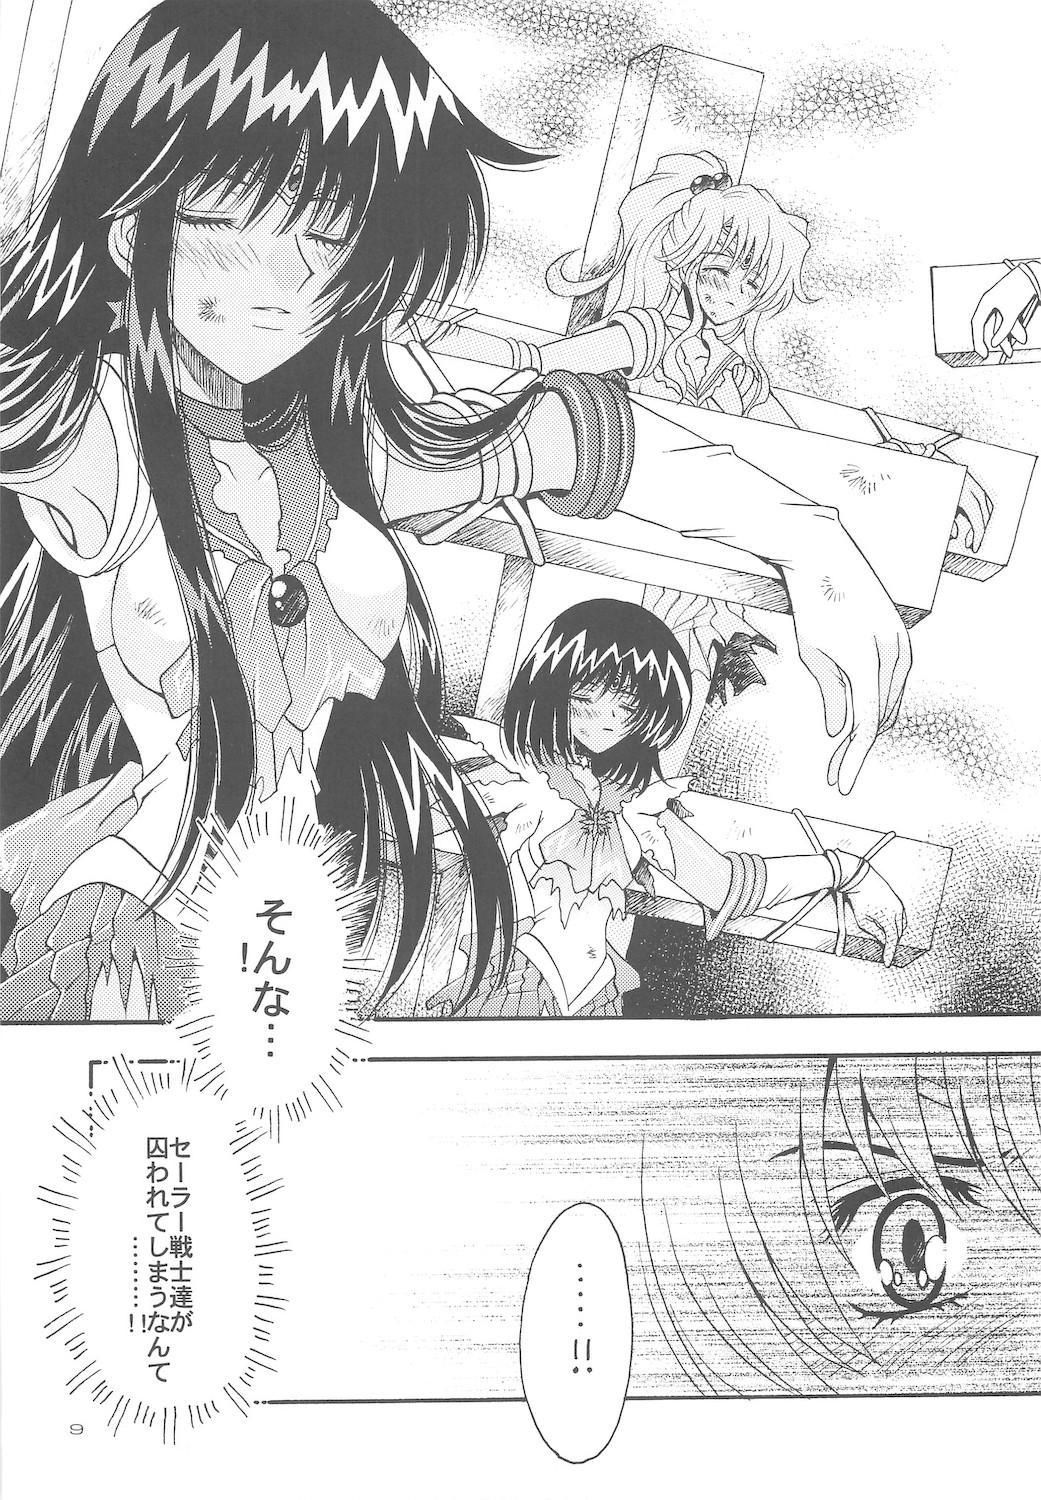 Retro Owaru Sekai dai 4 shou - Sailor moon Publico - Page 9